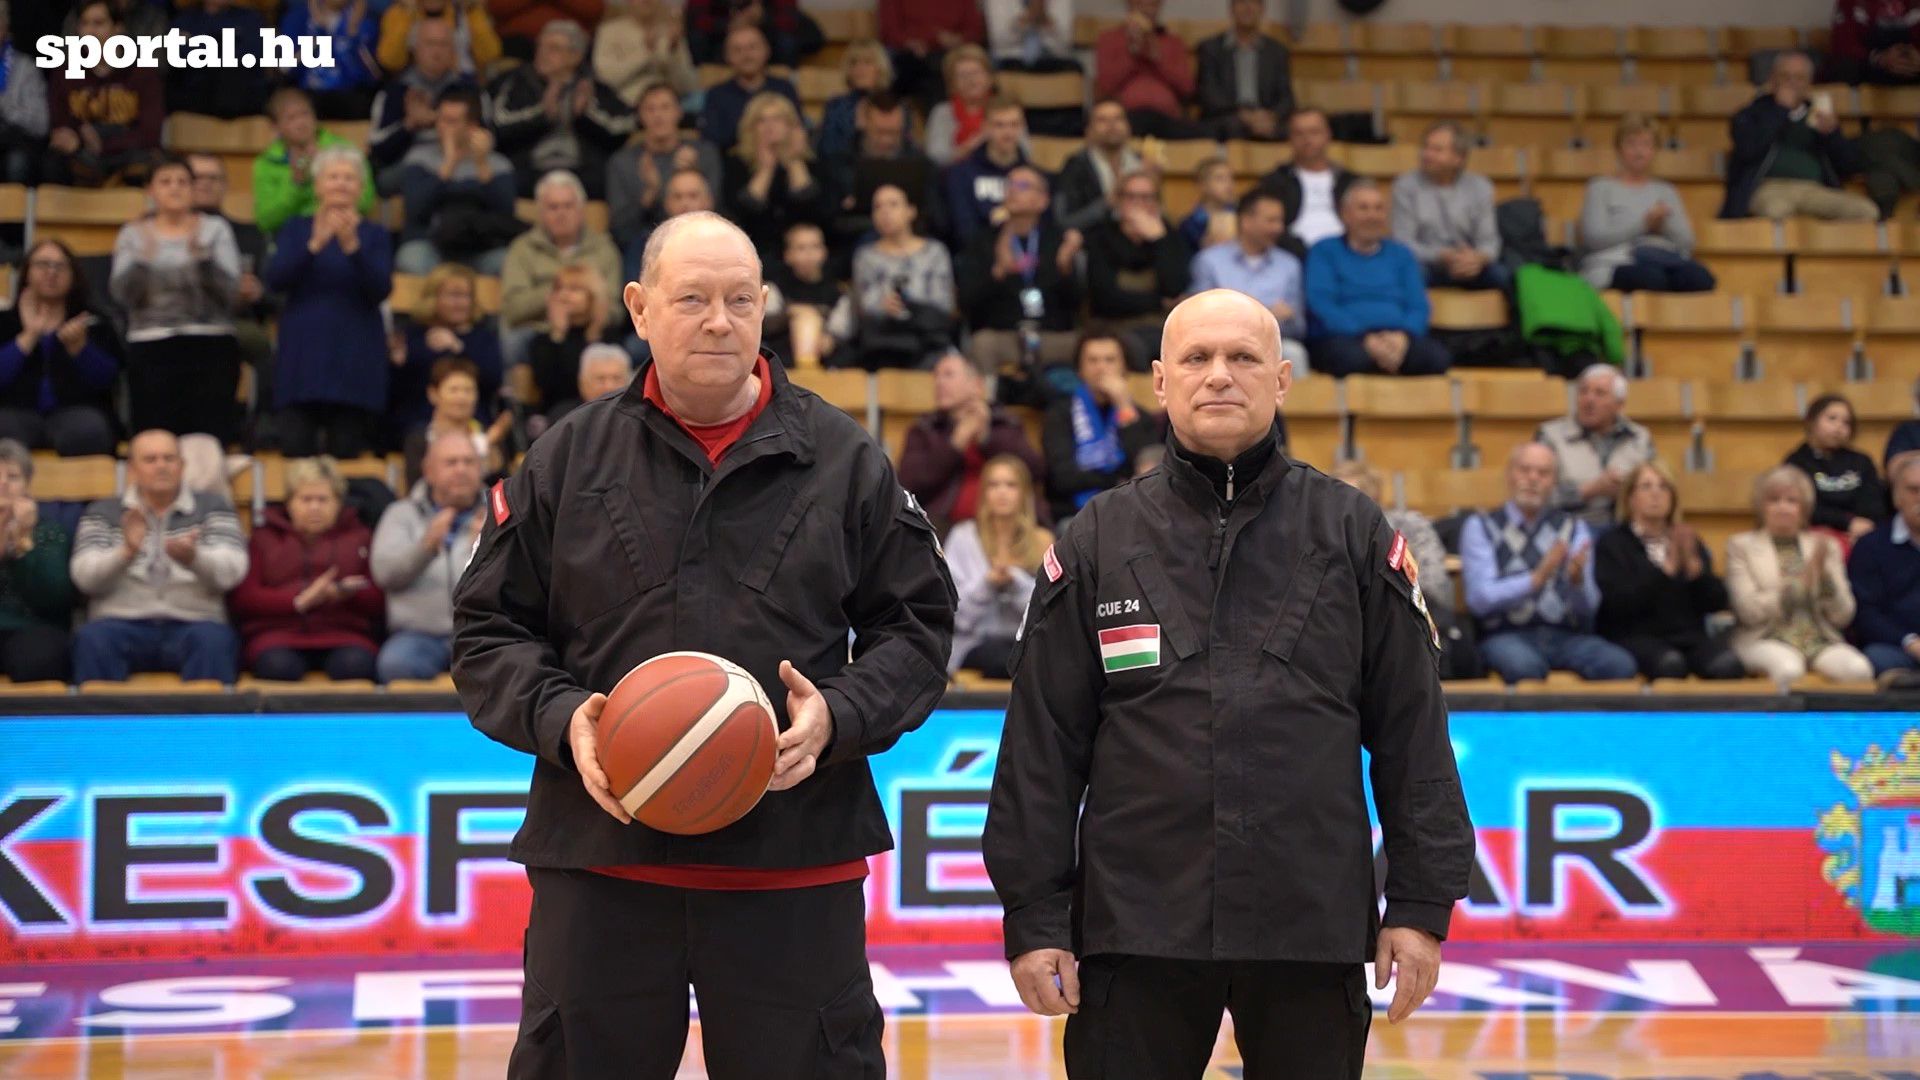 Pavelcze Lászlót és Klupács Pétert, a Törökországból hazatért két mentőst ünnepelték Fehérváron